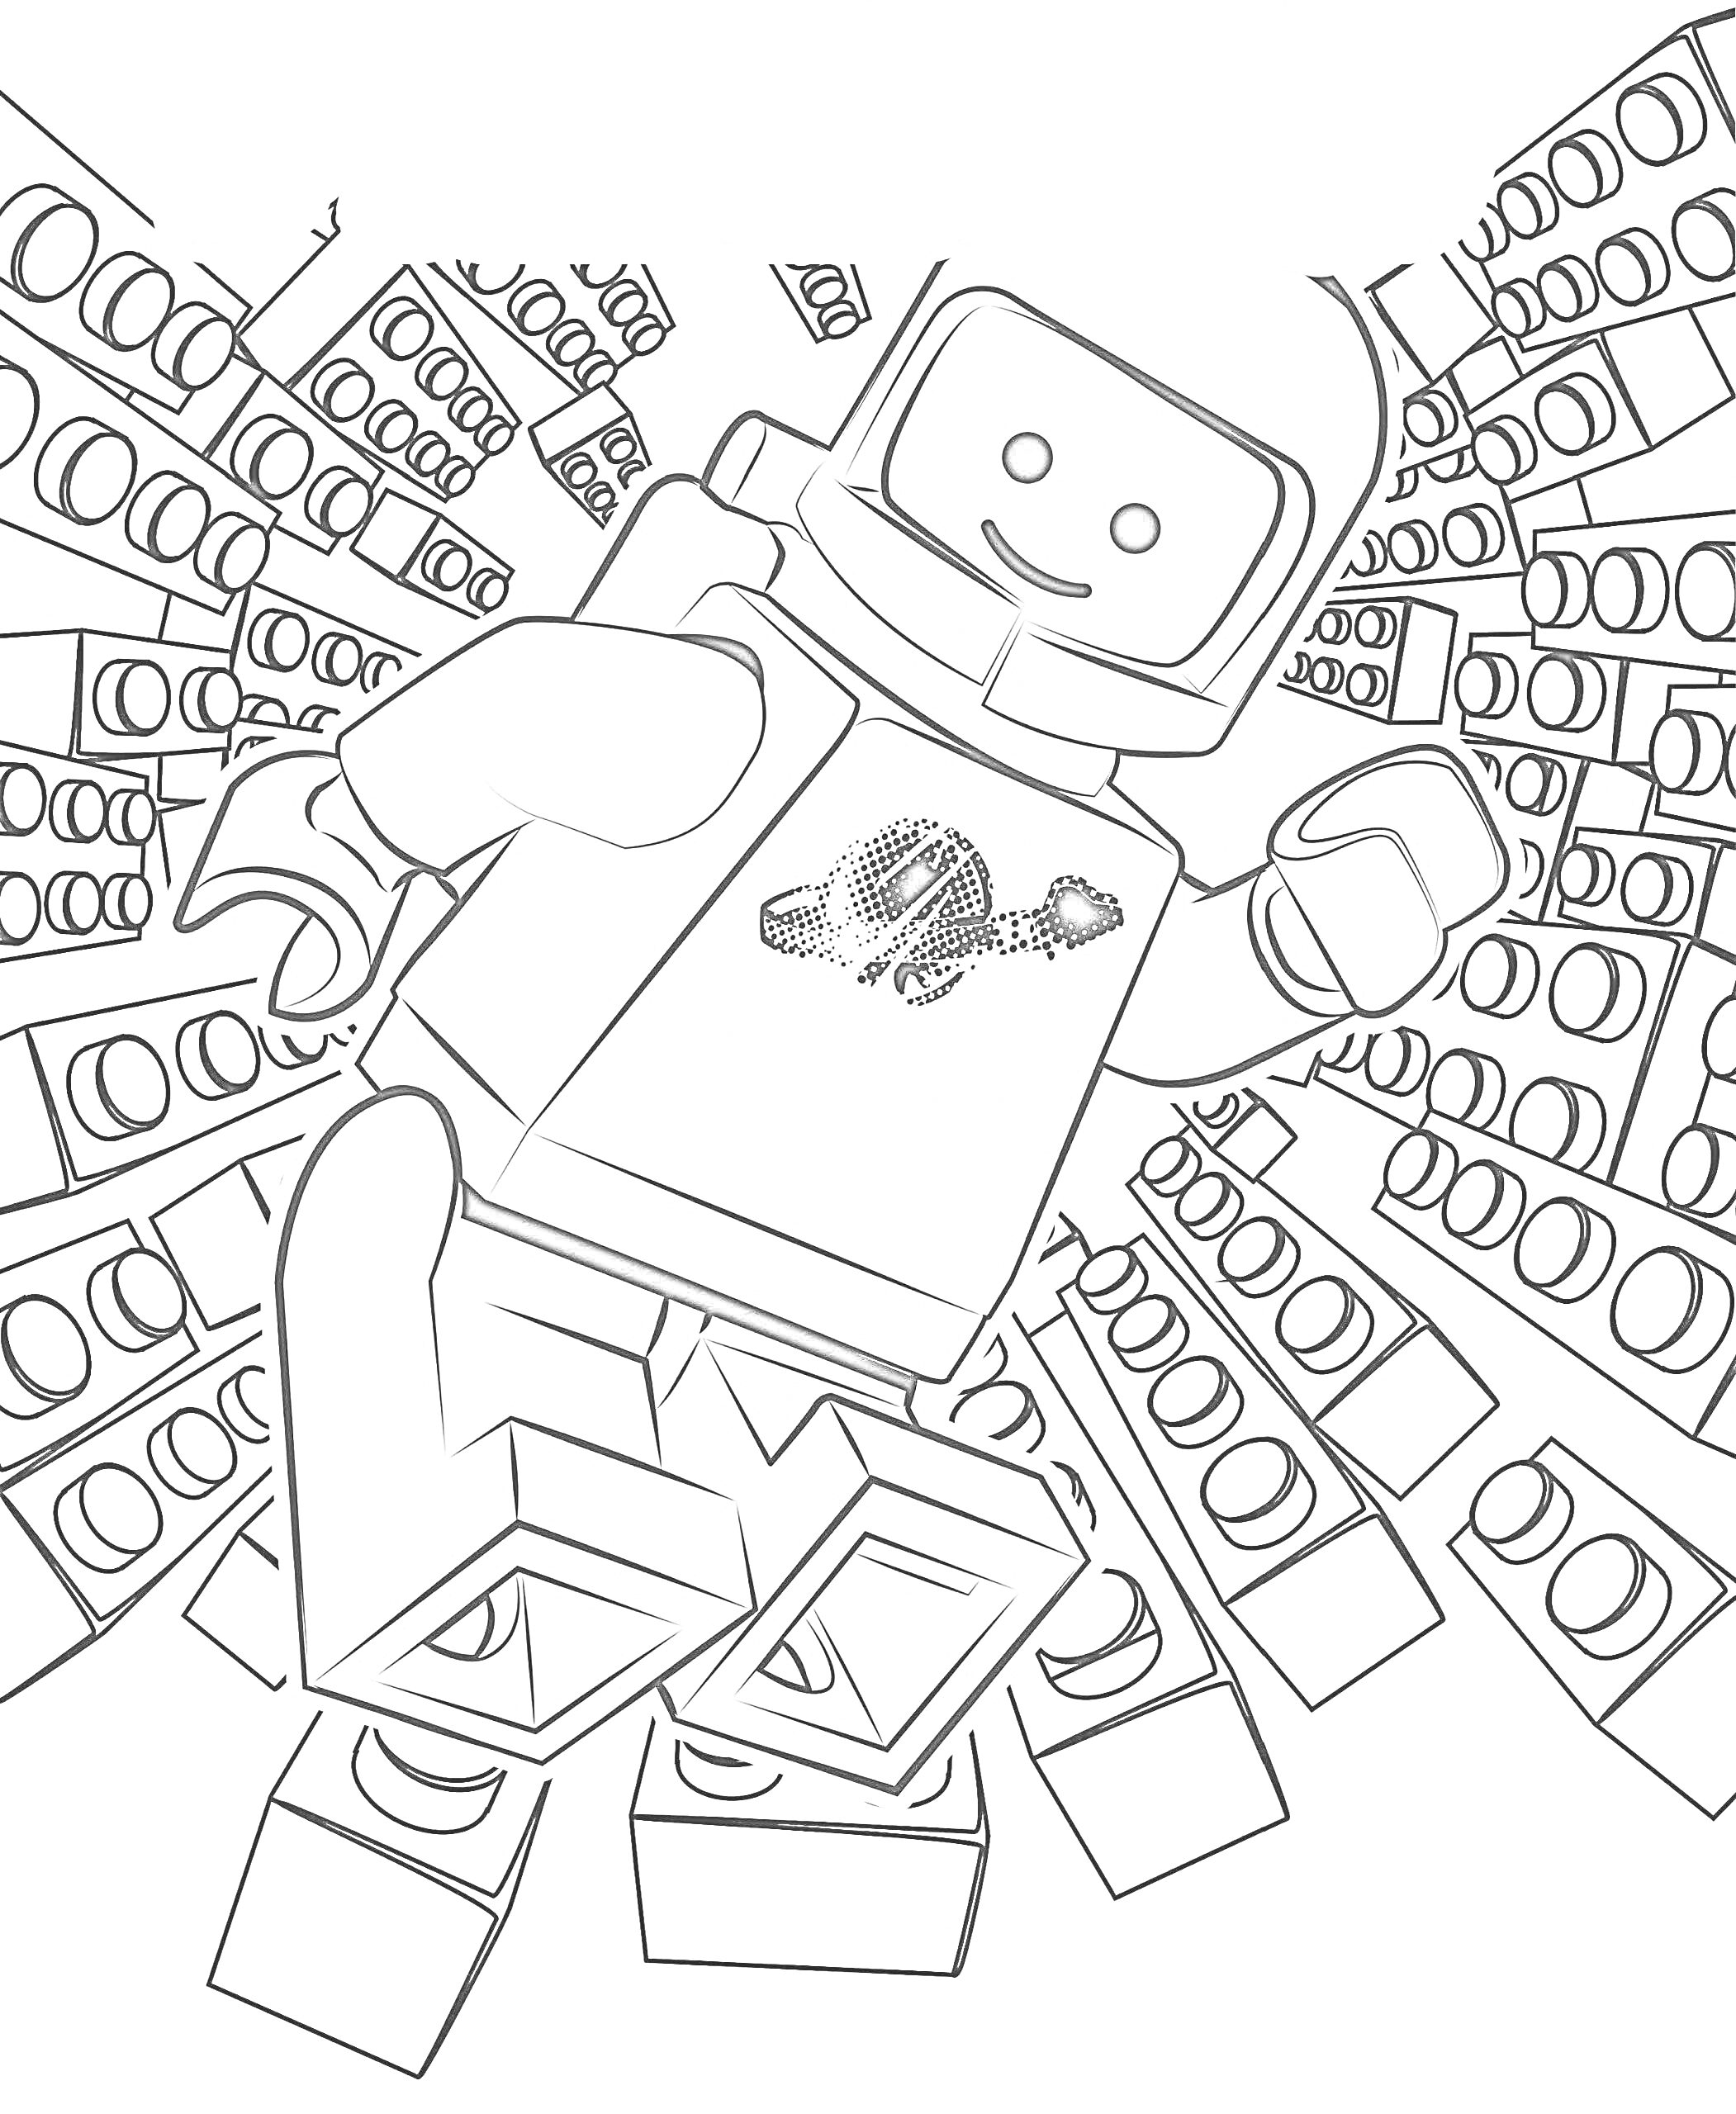 Раскраска Человек в скафандре из Лего на фоне кирпичиков Лего